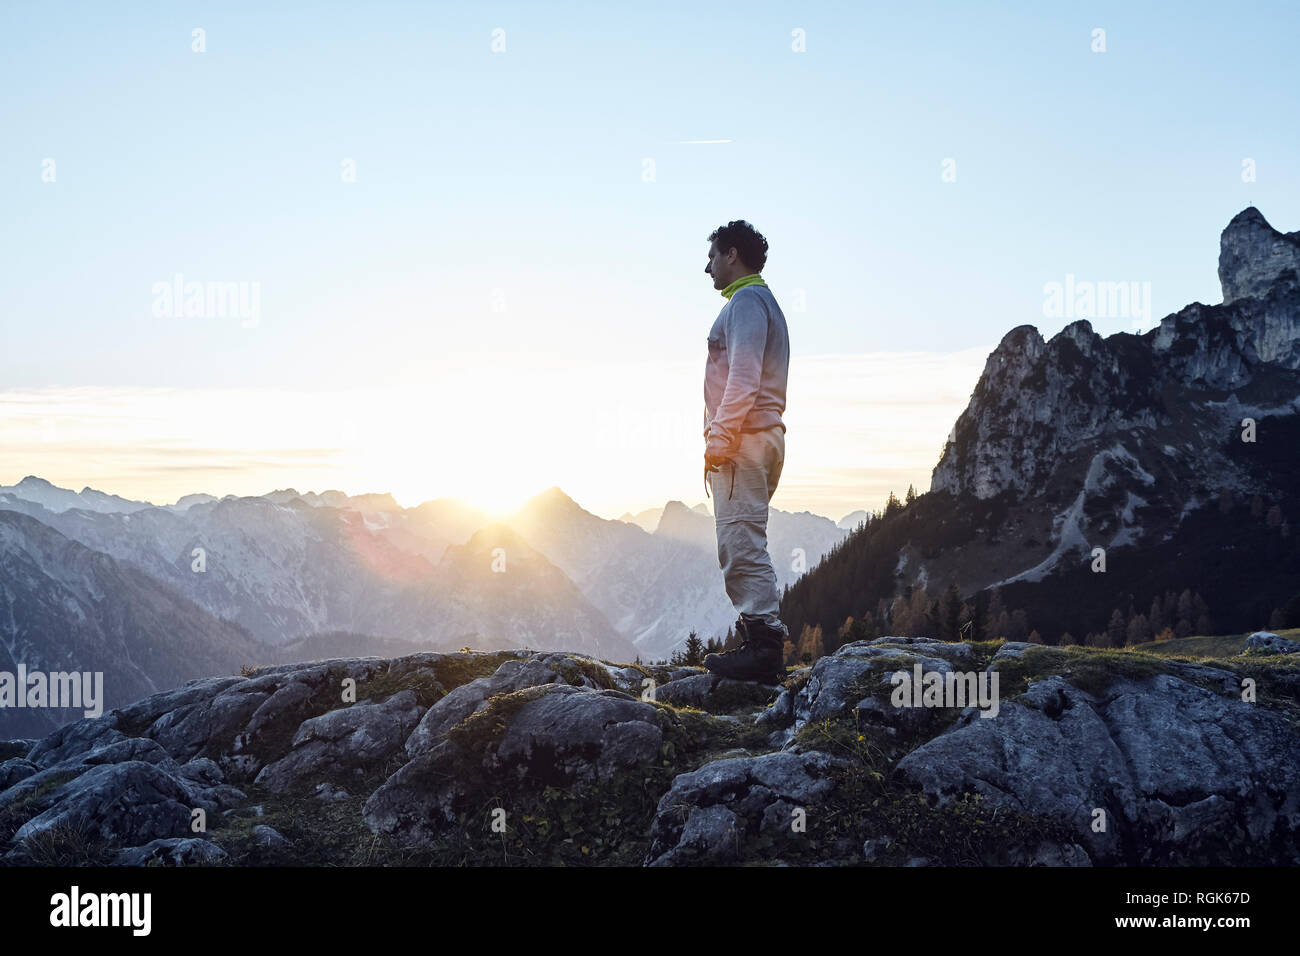 Autriche, Tyrol, Rofan, randonneur debout sur des rochers au coucher du soleil Banque D'Images